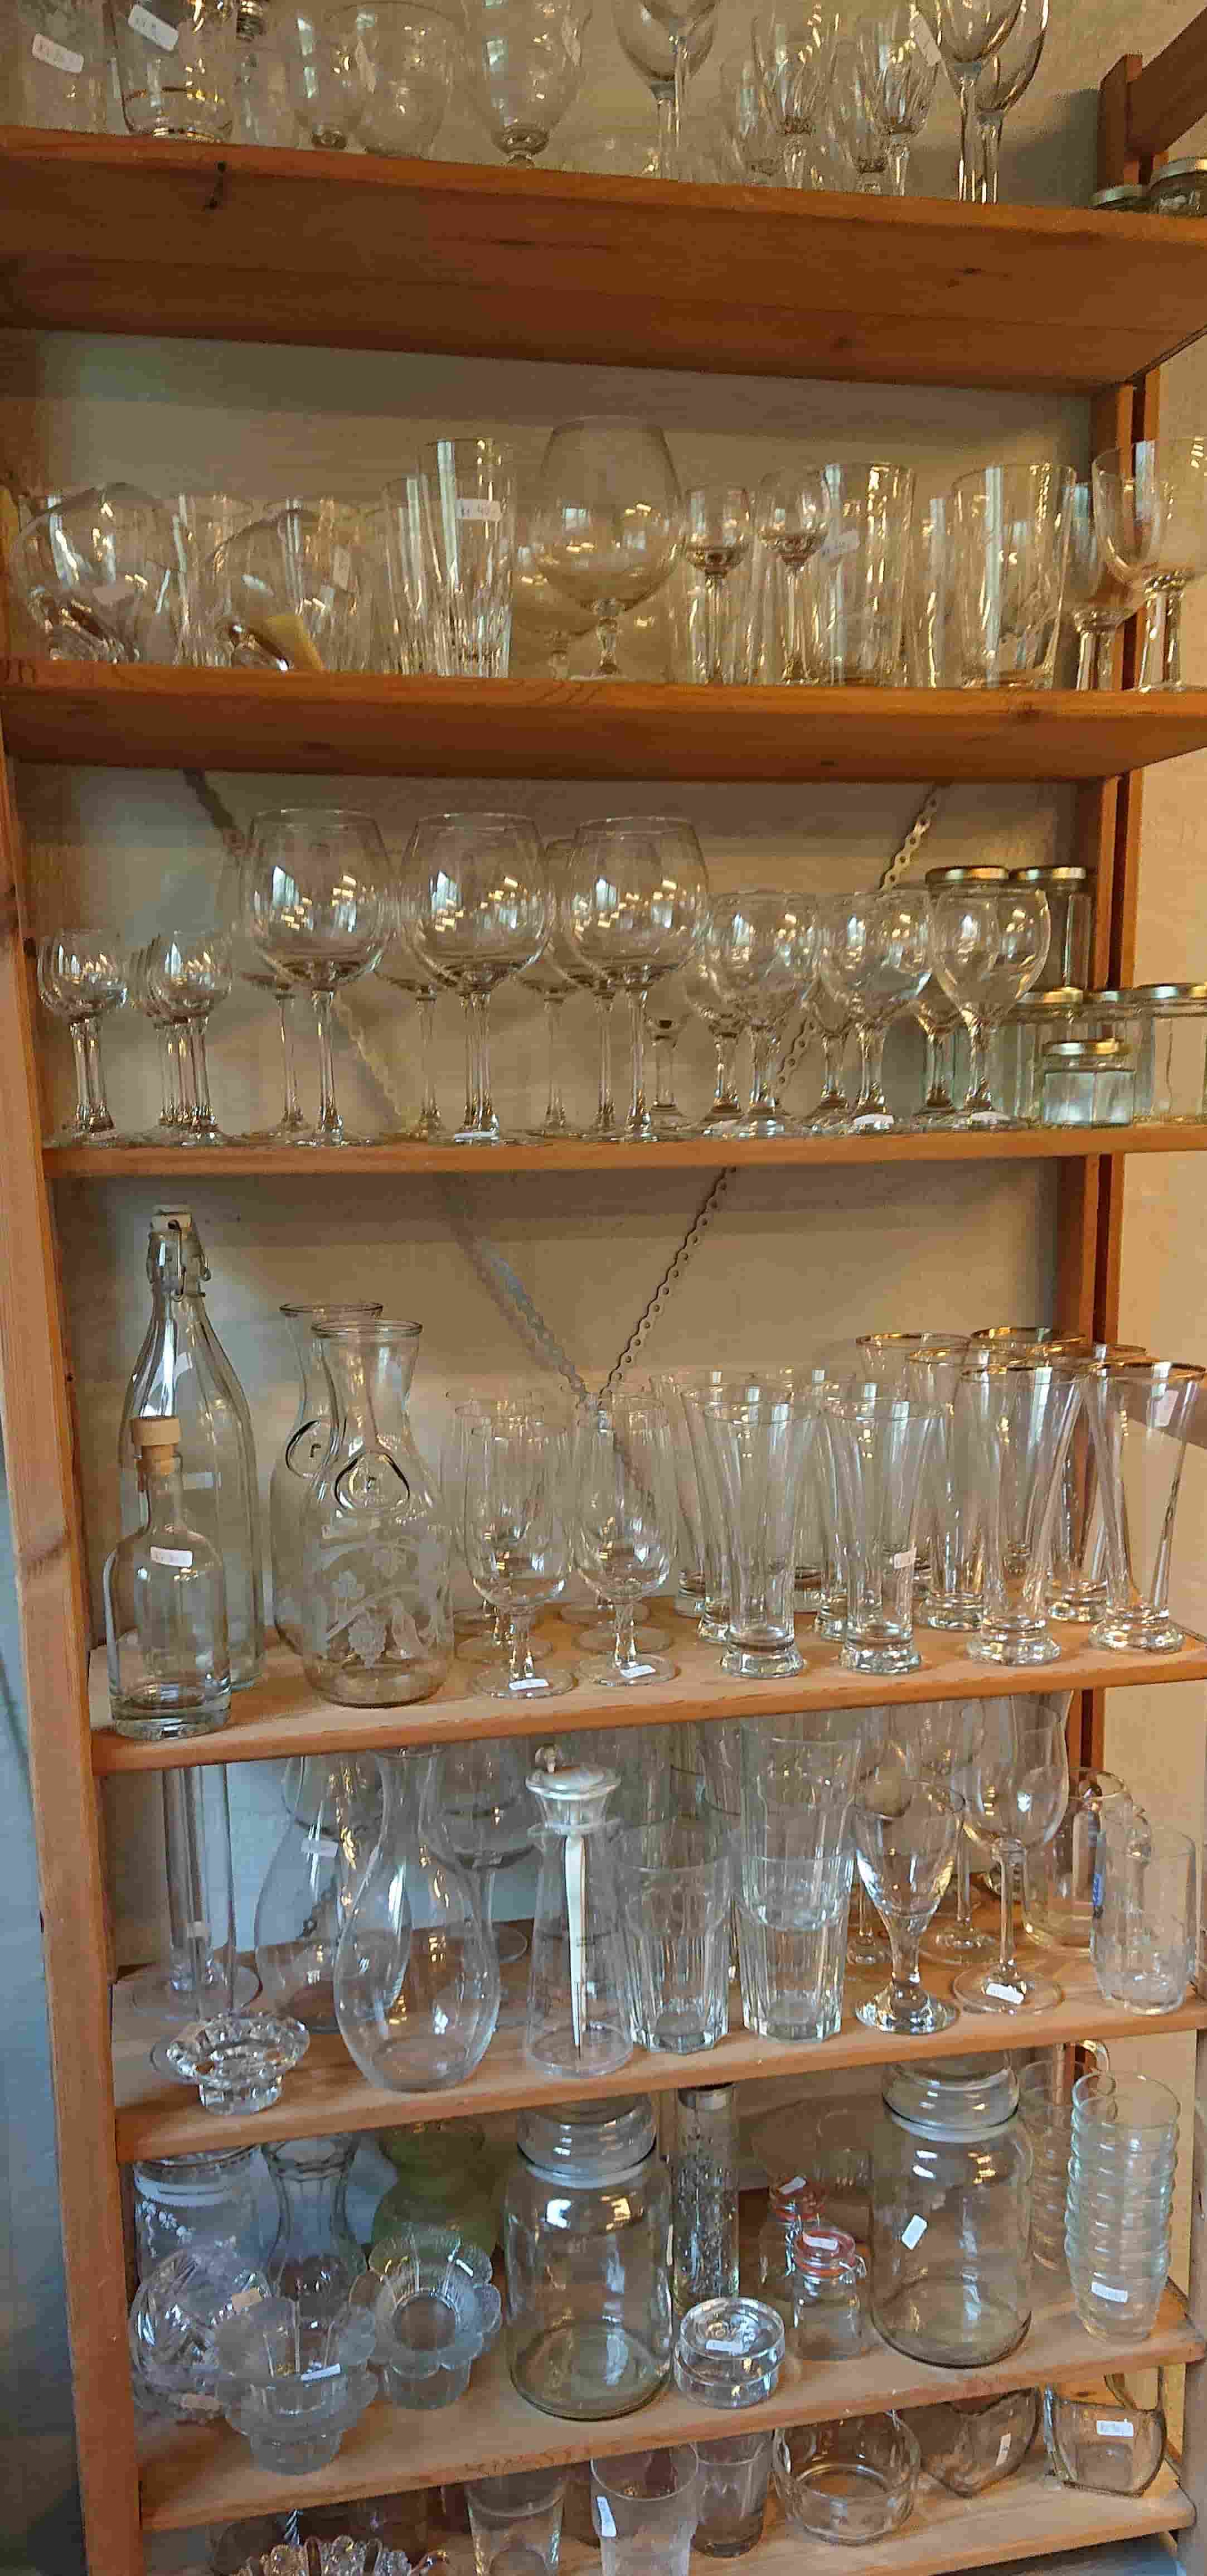 Hos Vivis Pryd kan du købe flotte glas til hverdag og fest.